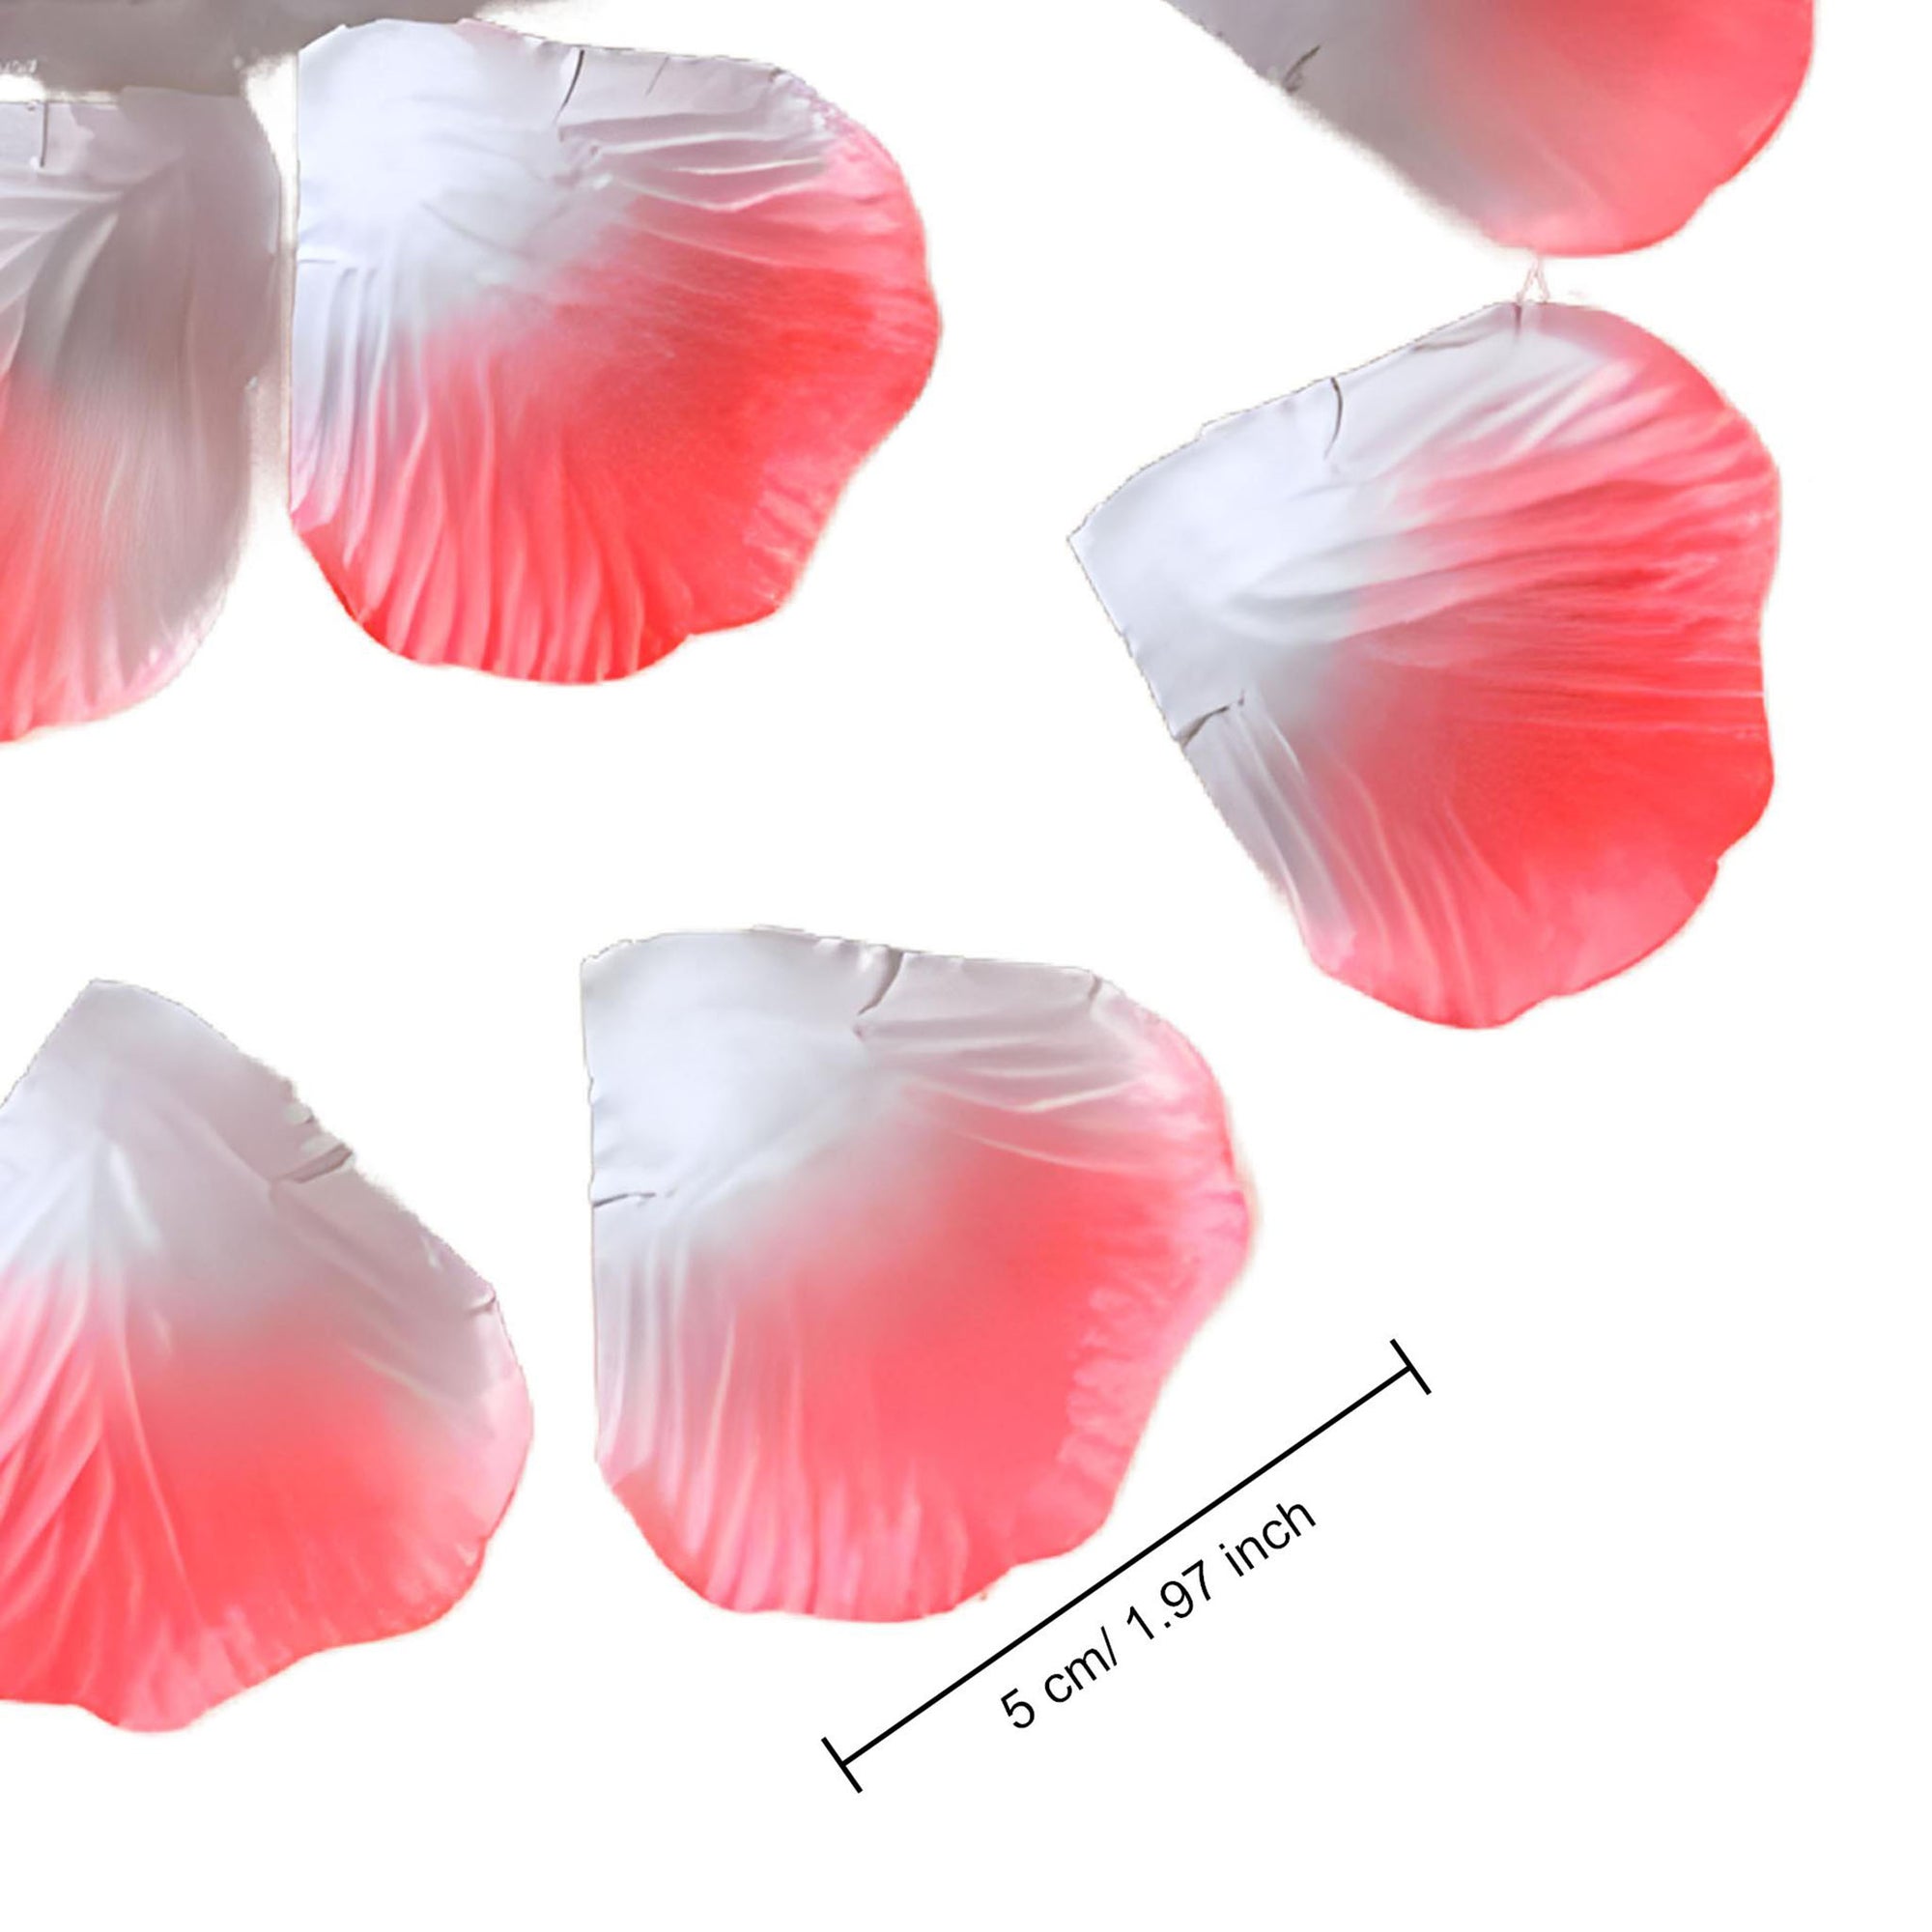 Coral Rose Petals Artificial Flower Silk Petals Bulk 1000 pcs